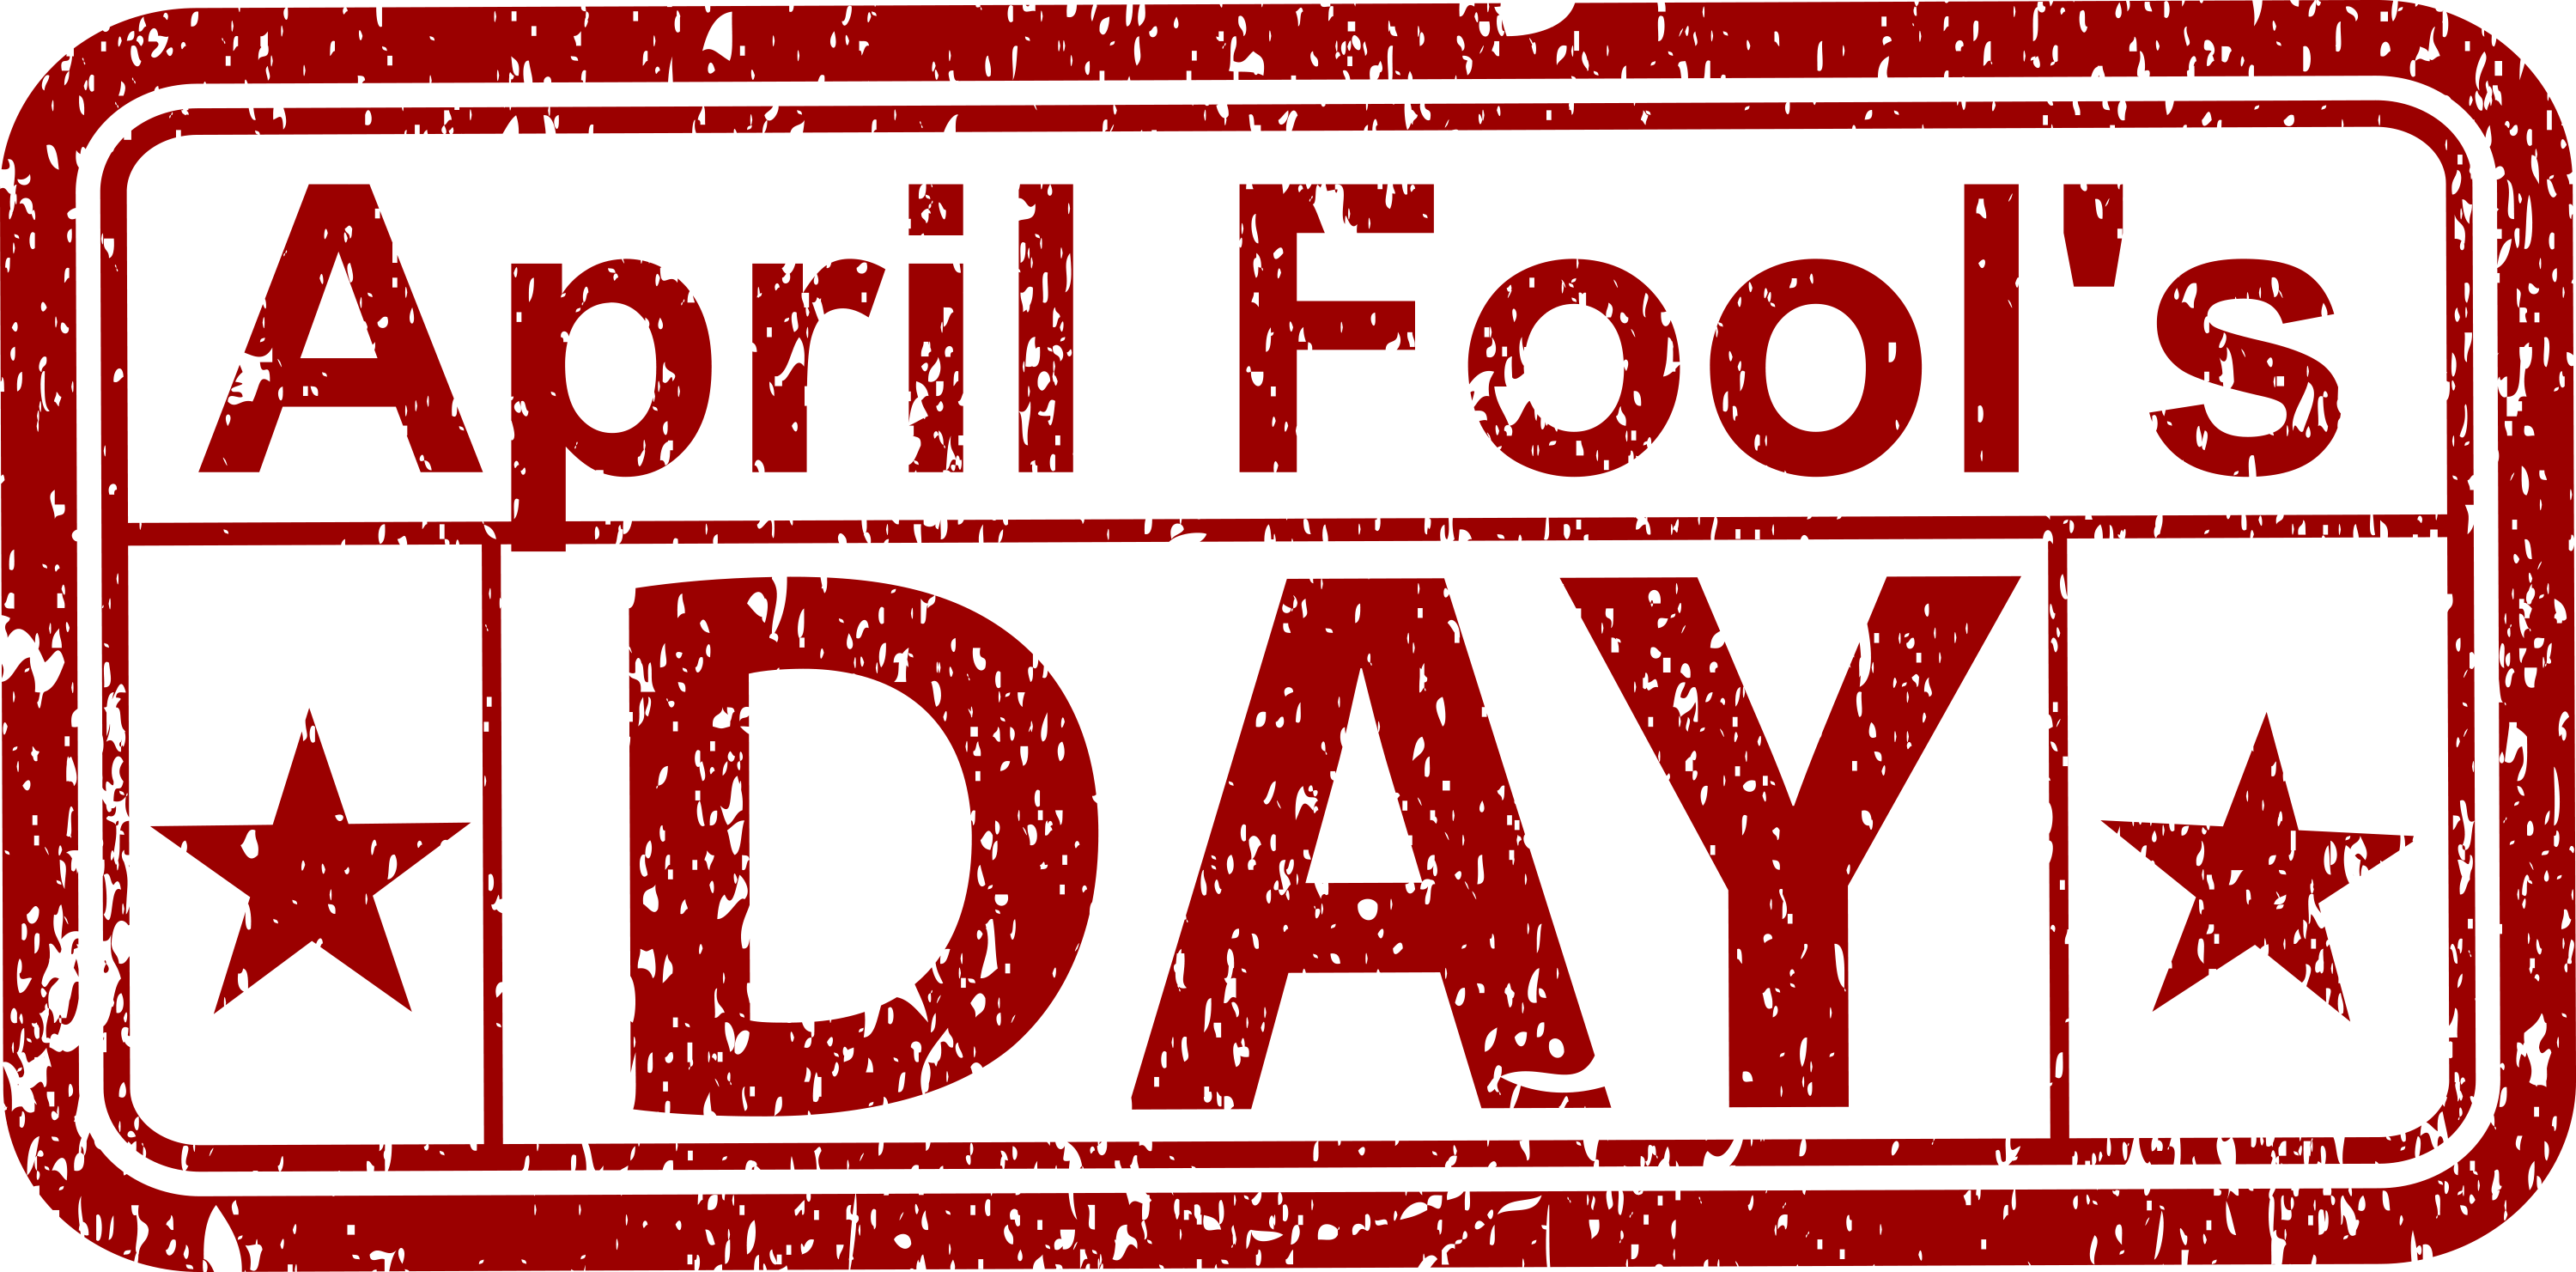 Fools Day. April s Fool. April 1 - April Fool's Day. День дурака на английском.